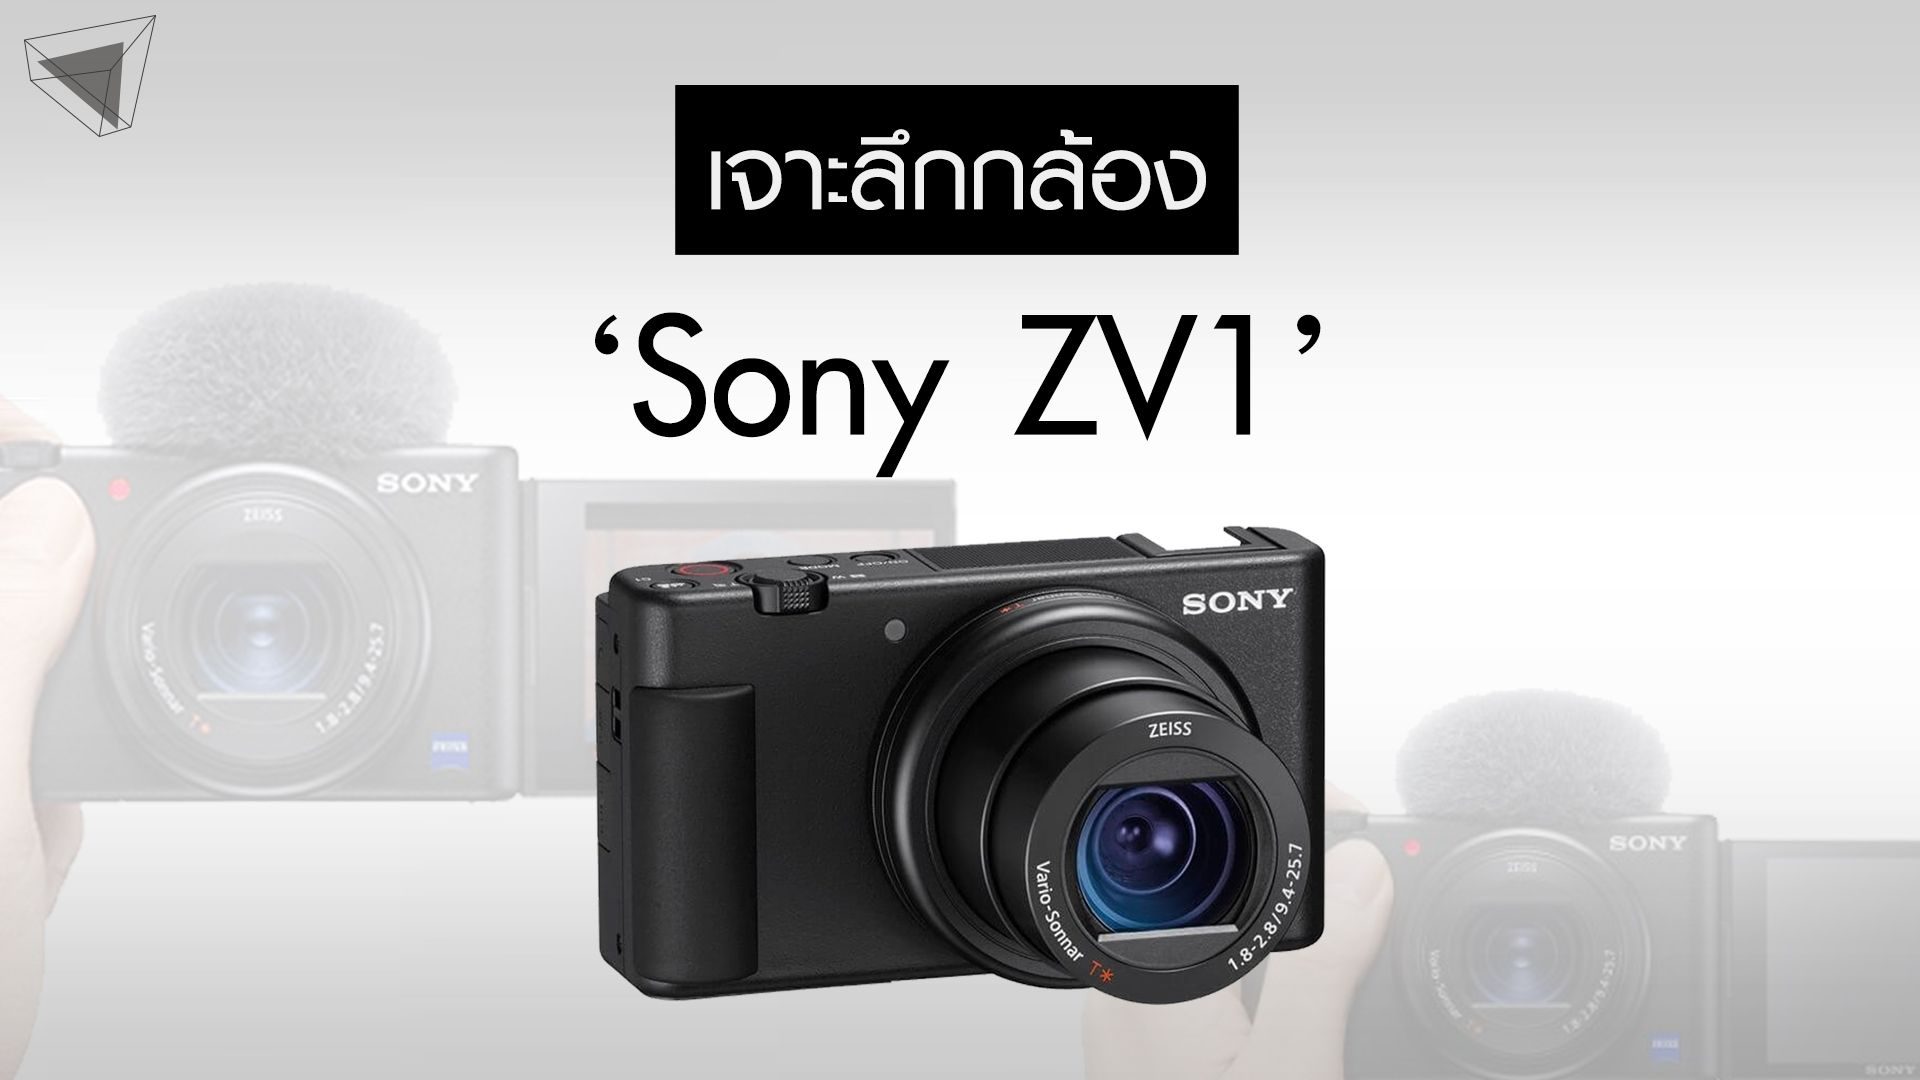 Sony ZV1